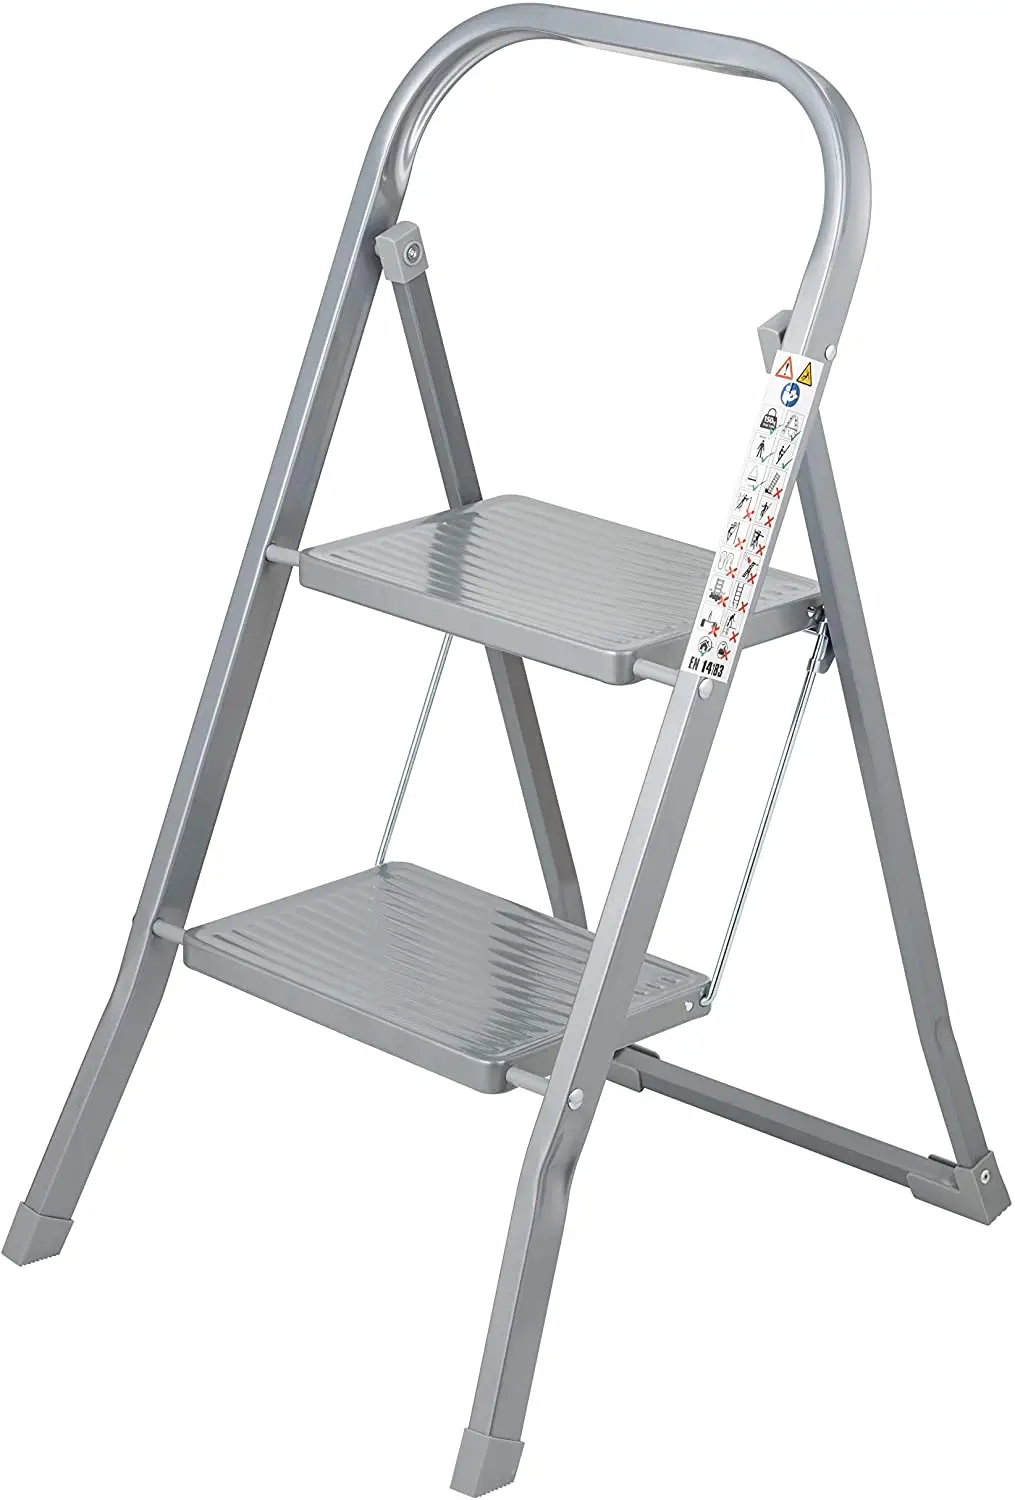 Escalera de acero de nivel 2 - pies impermeables - facilidad de almacenamiento para el diseño plegable - opción ideal para el hogar / cocina